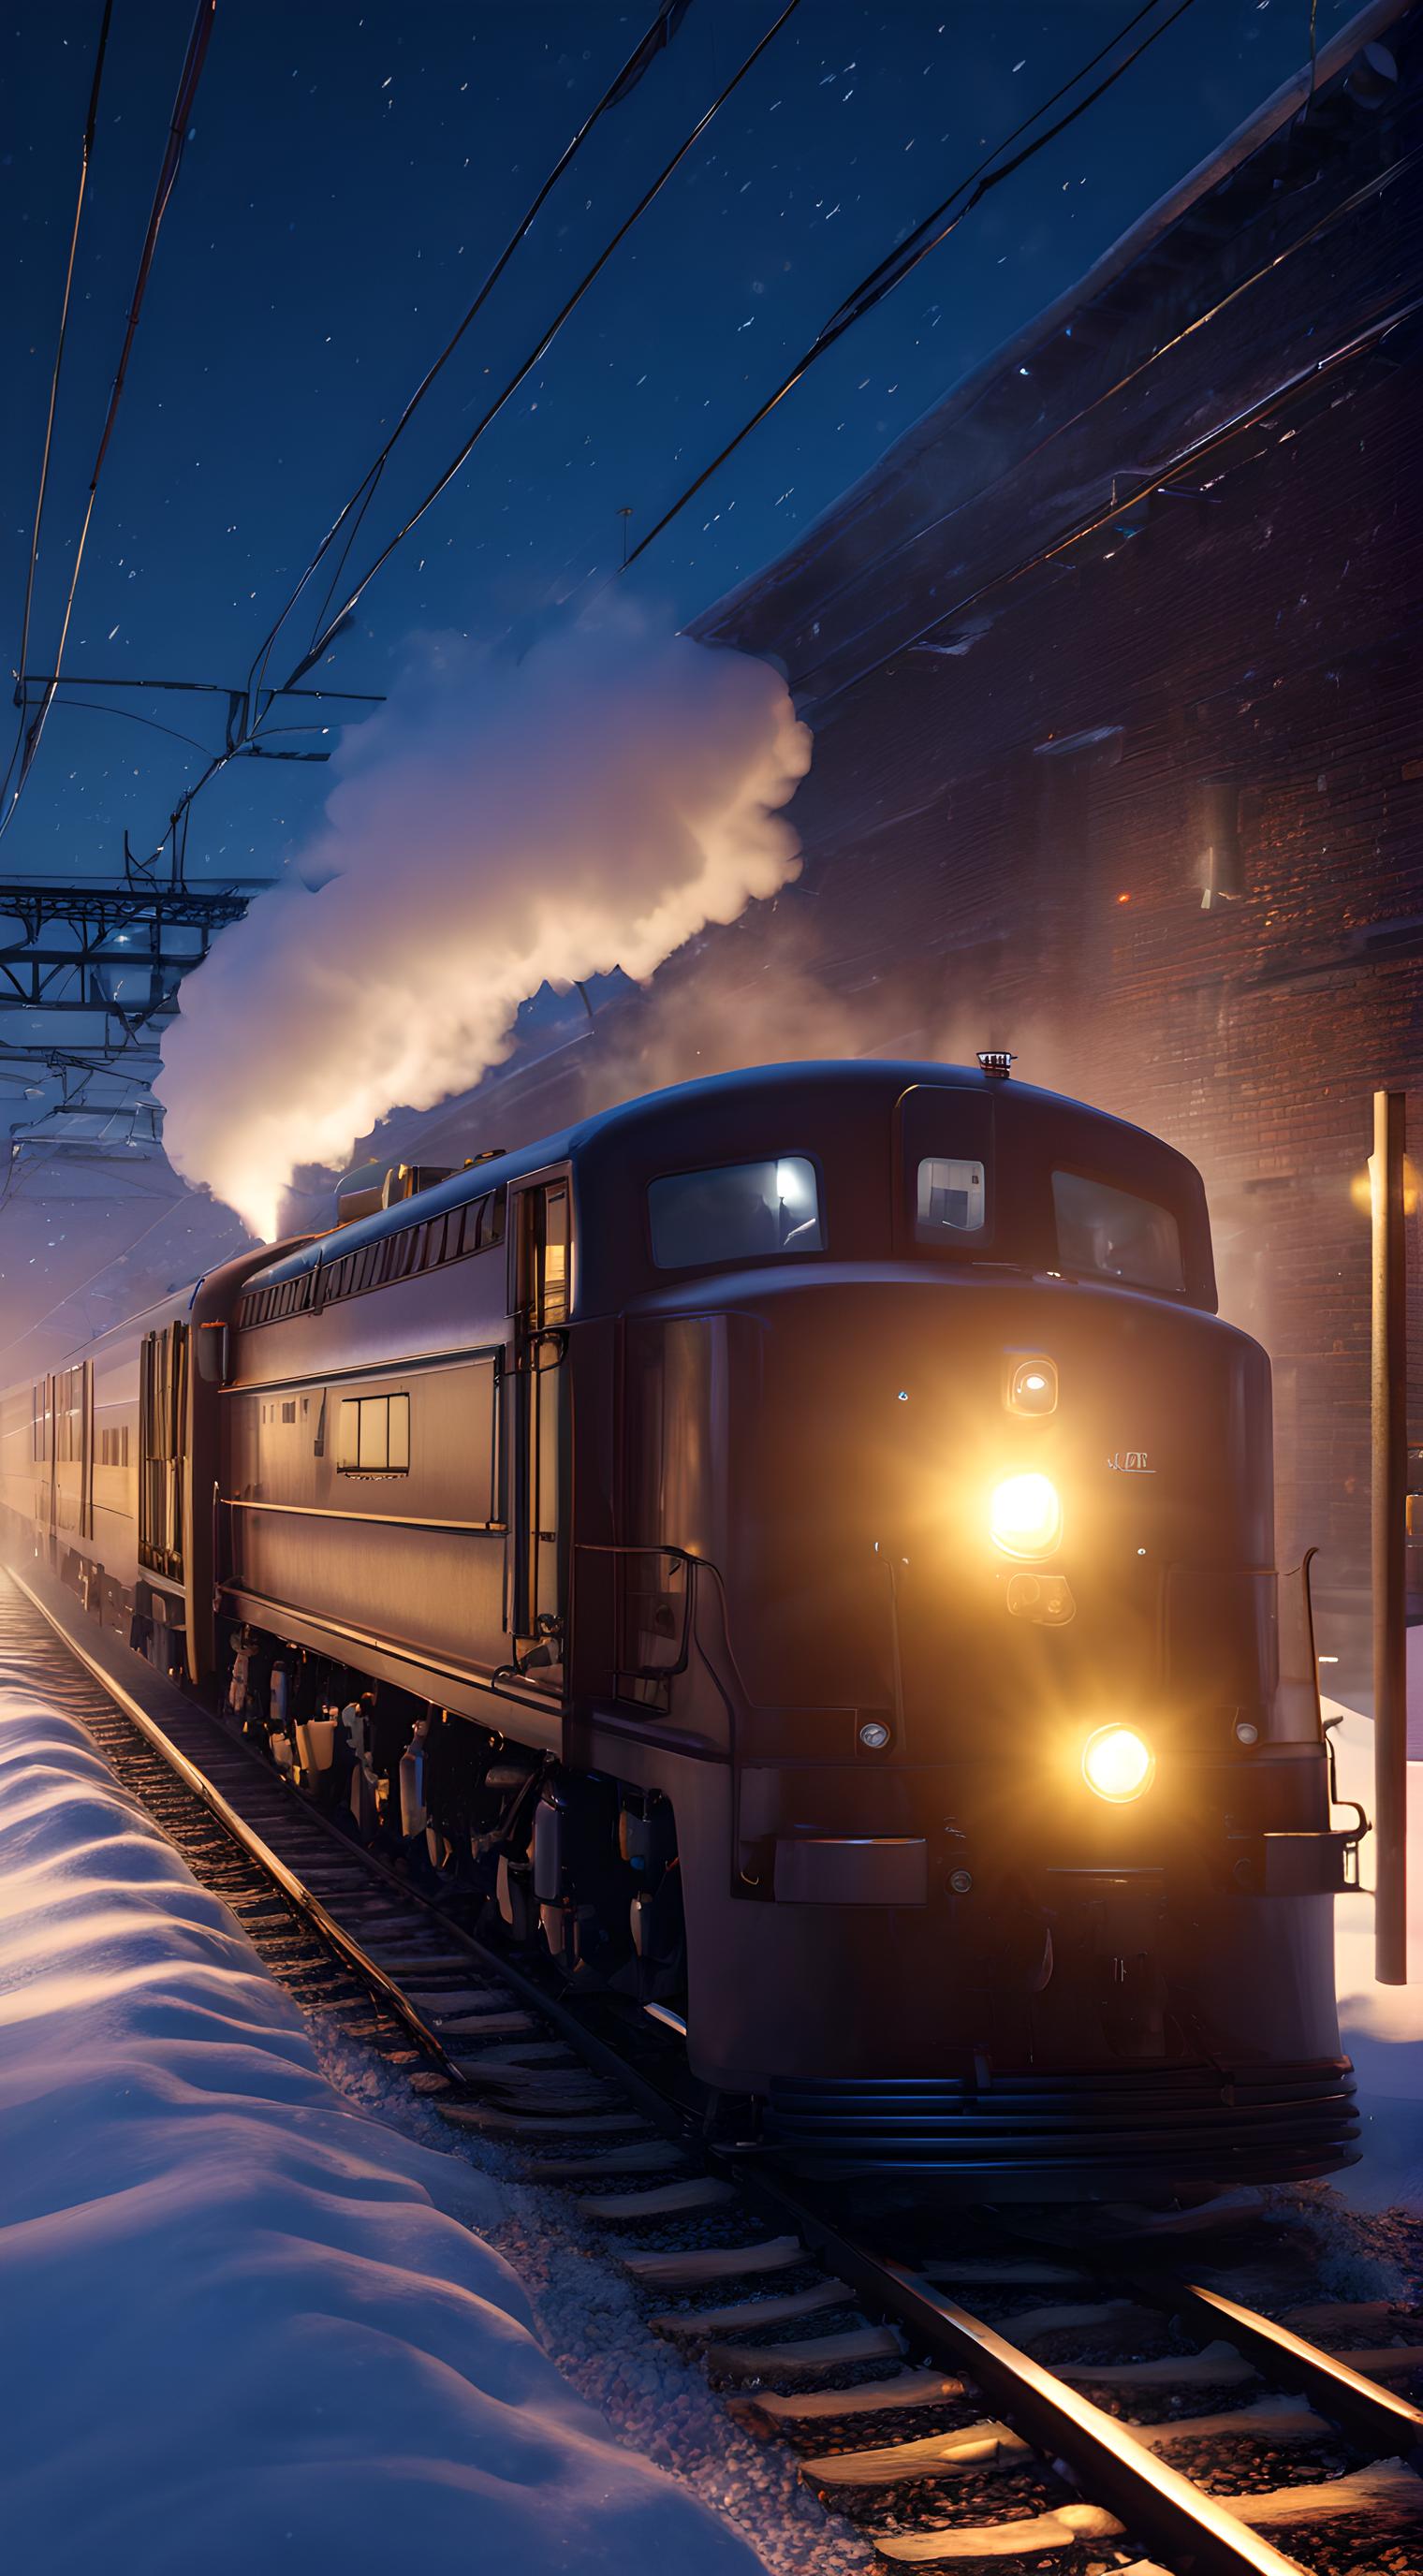 雪夜进站的火车